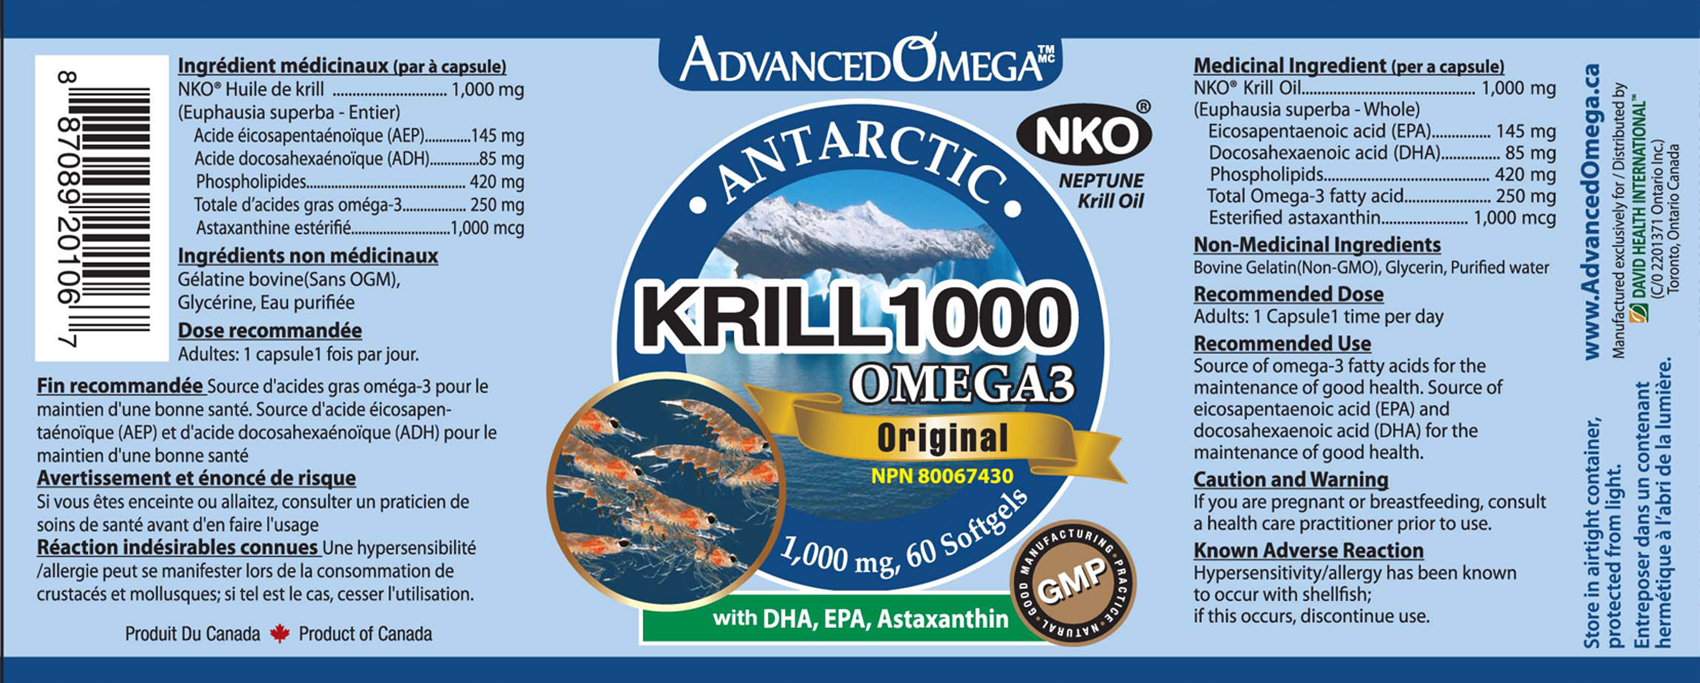 Advanced Omega Krill 1000 mg